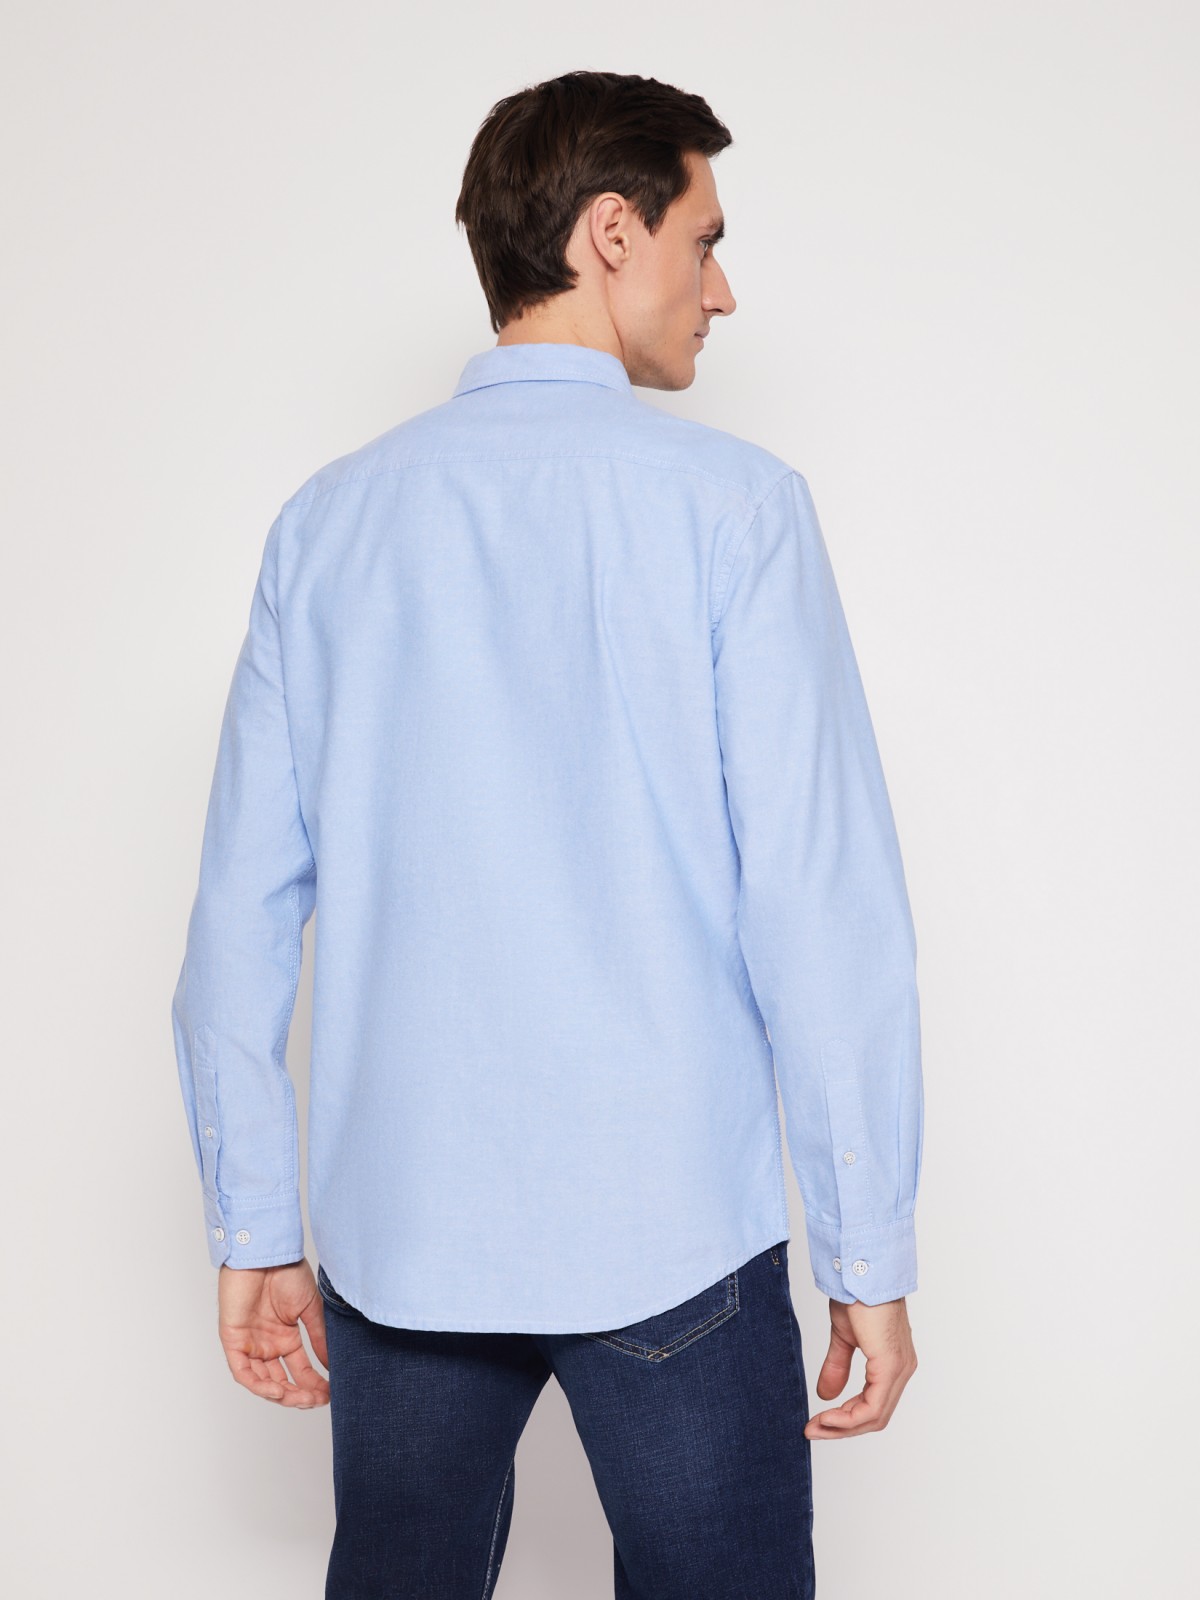 Хлопковая рубашка с длинным рукавом zolla 012122191013, цвет светло-голубой, размер M - фото 6